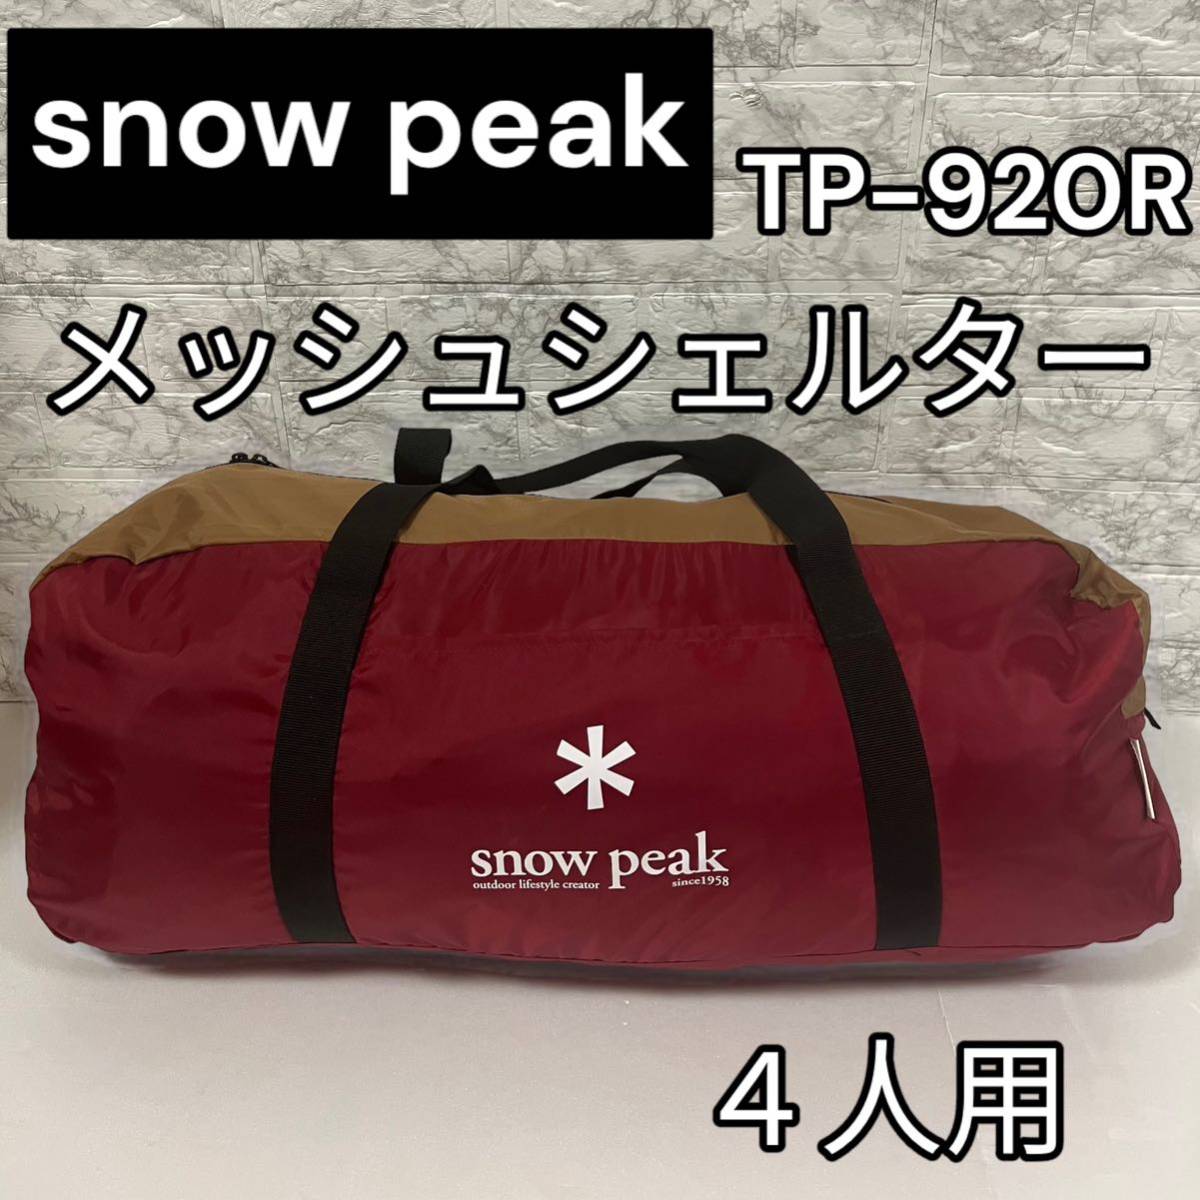 スノーピーク(snow peak) メッシュシェルター TP-920